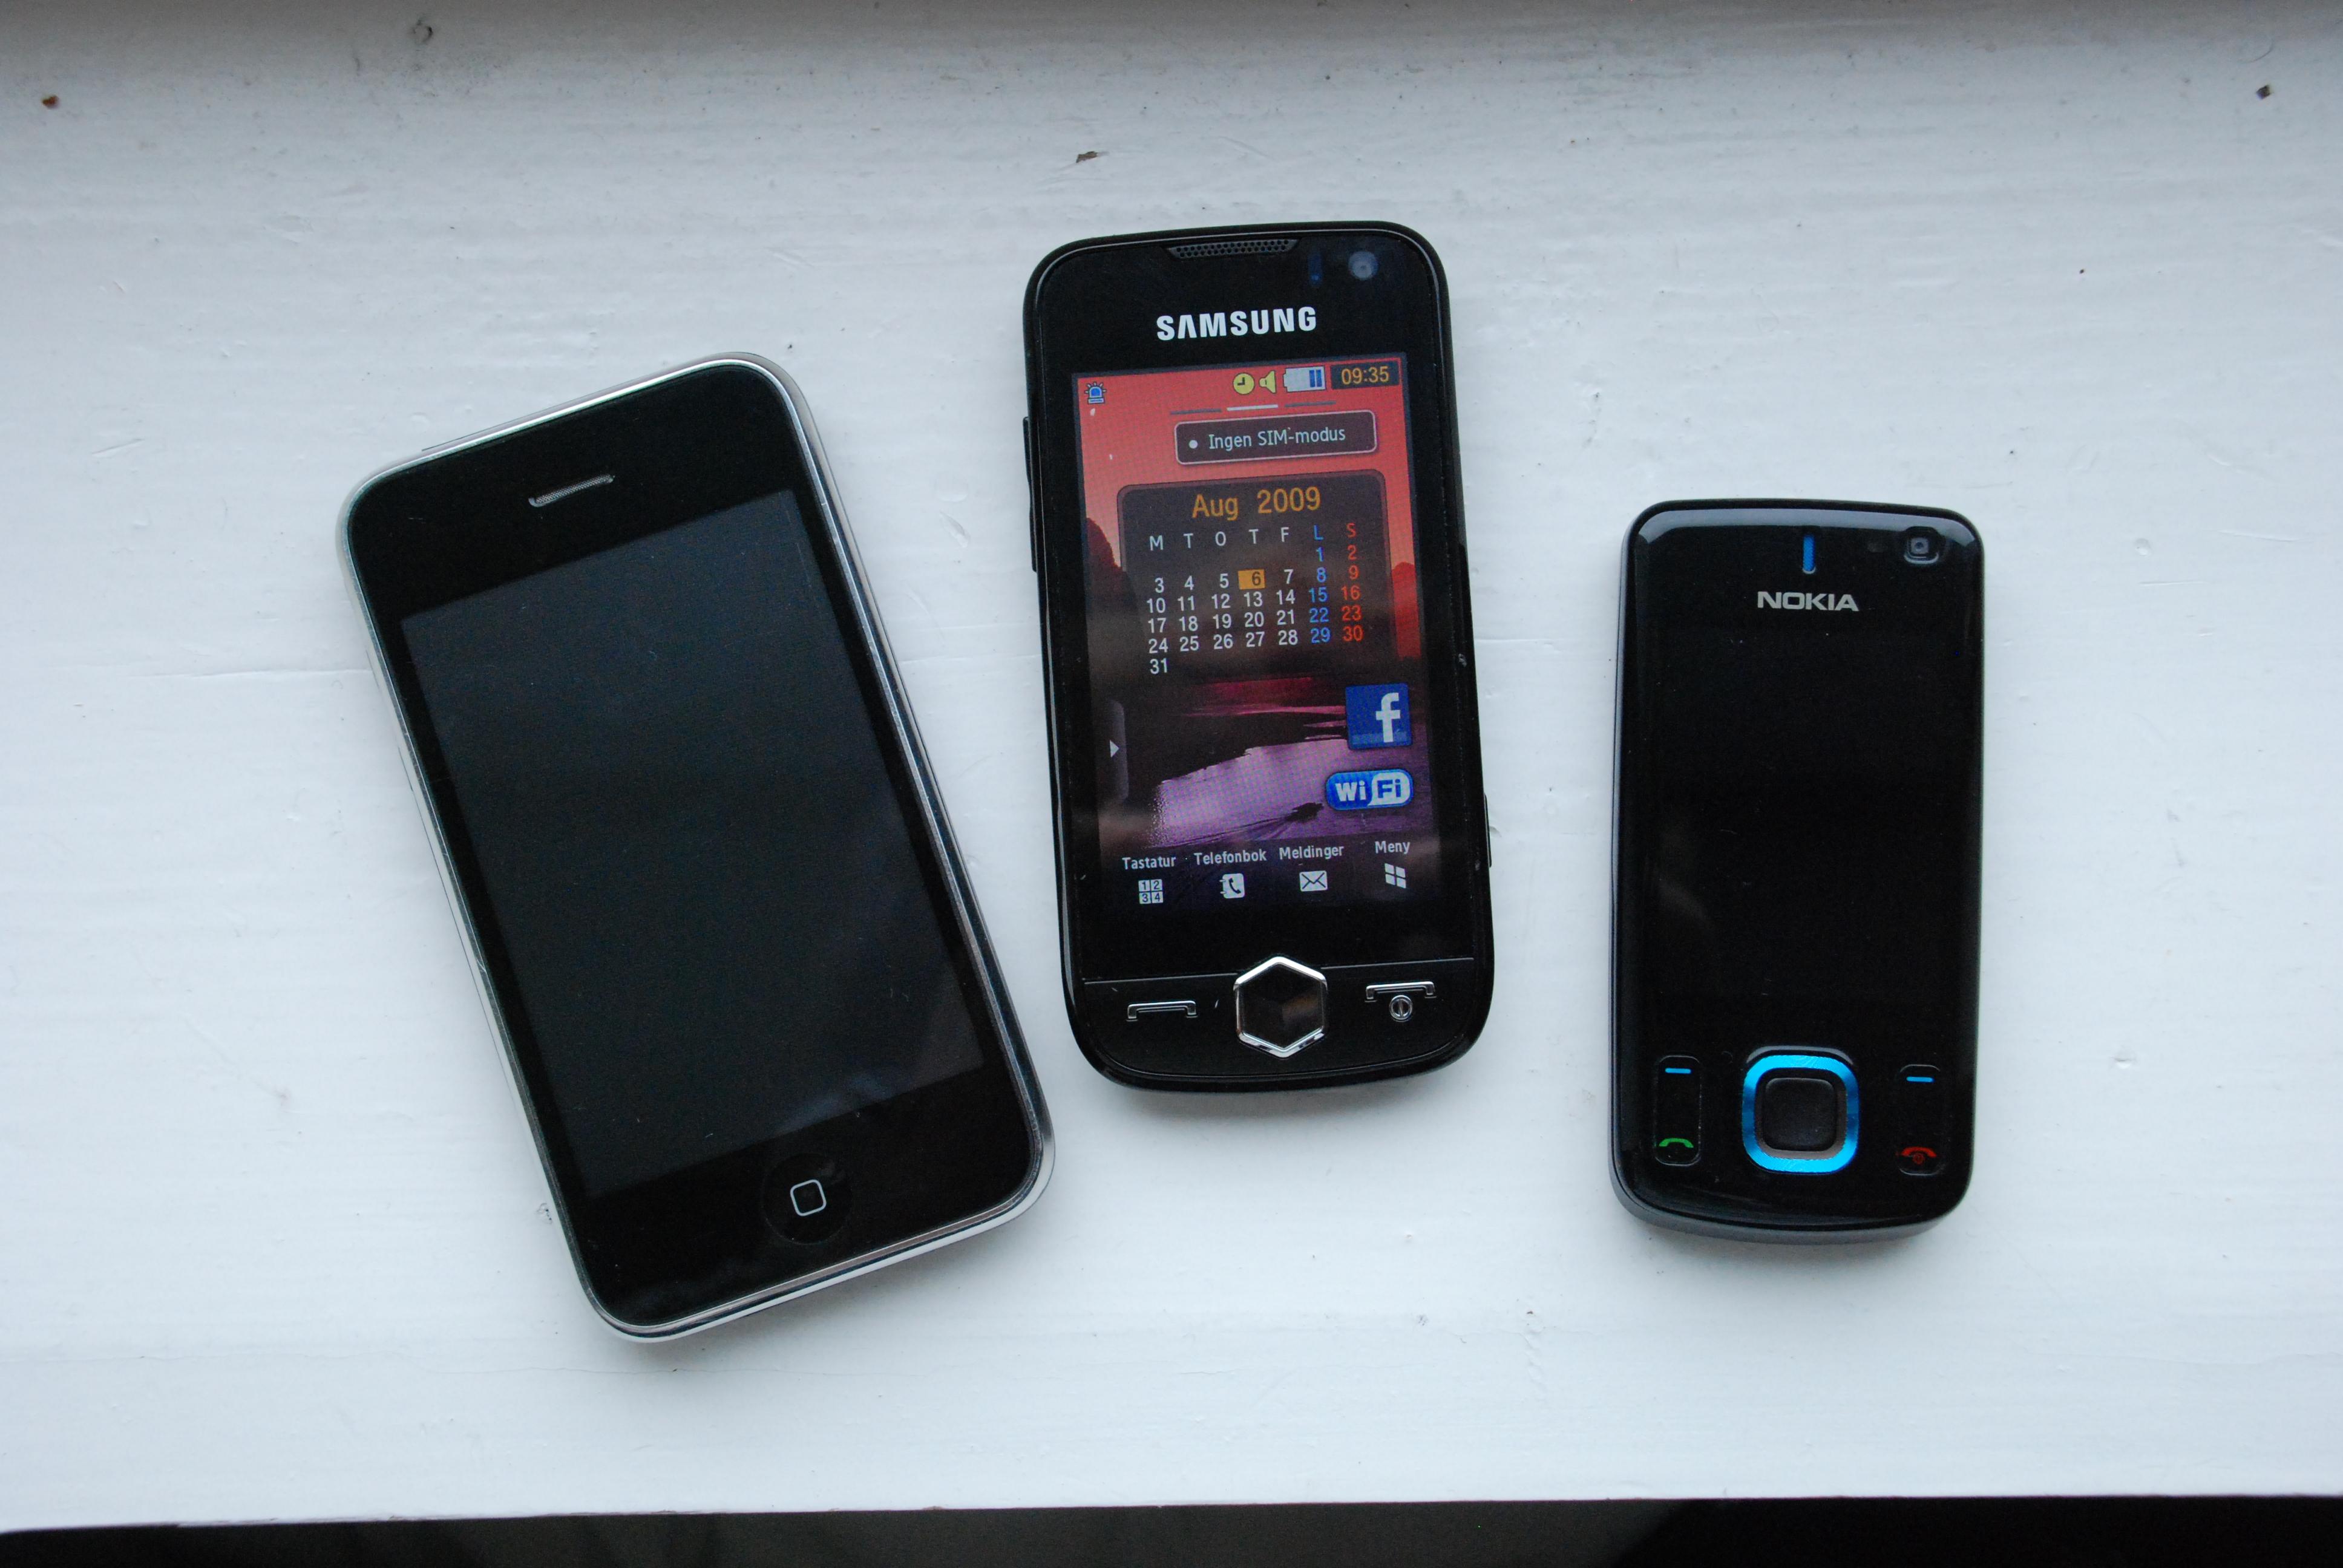 Jét er mindre enn Iphone, men større en mange vanlige telefoner som for eksempel Nokia 6600 Slide.